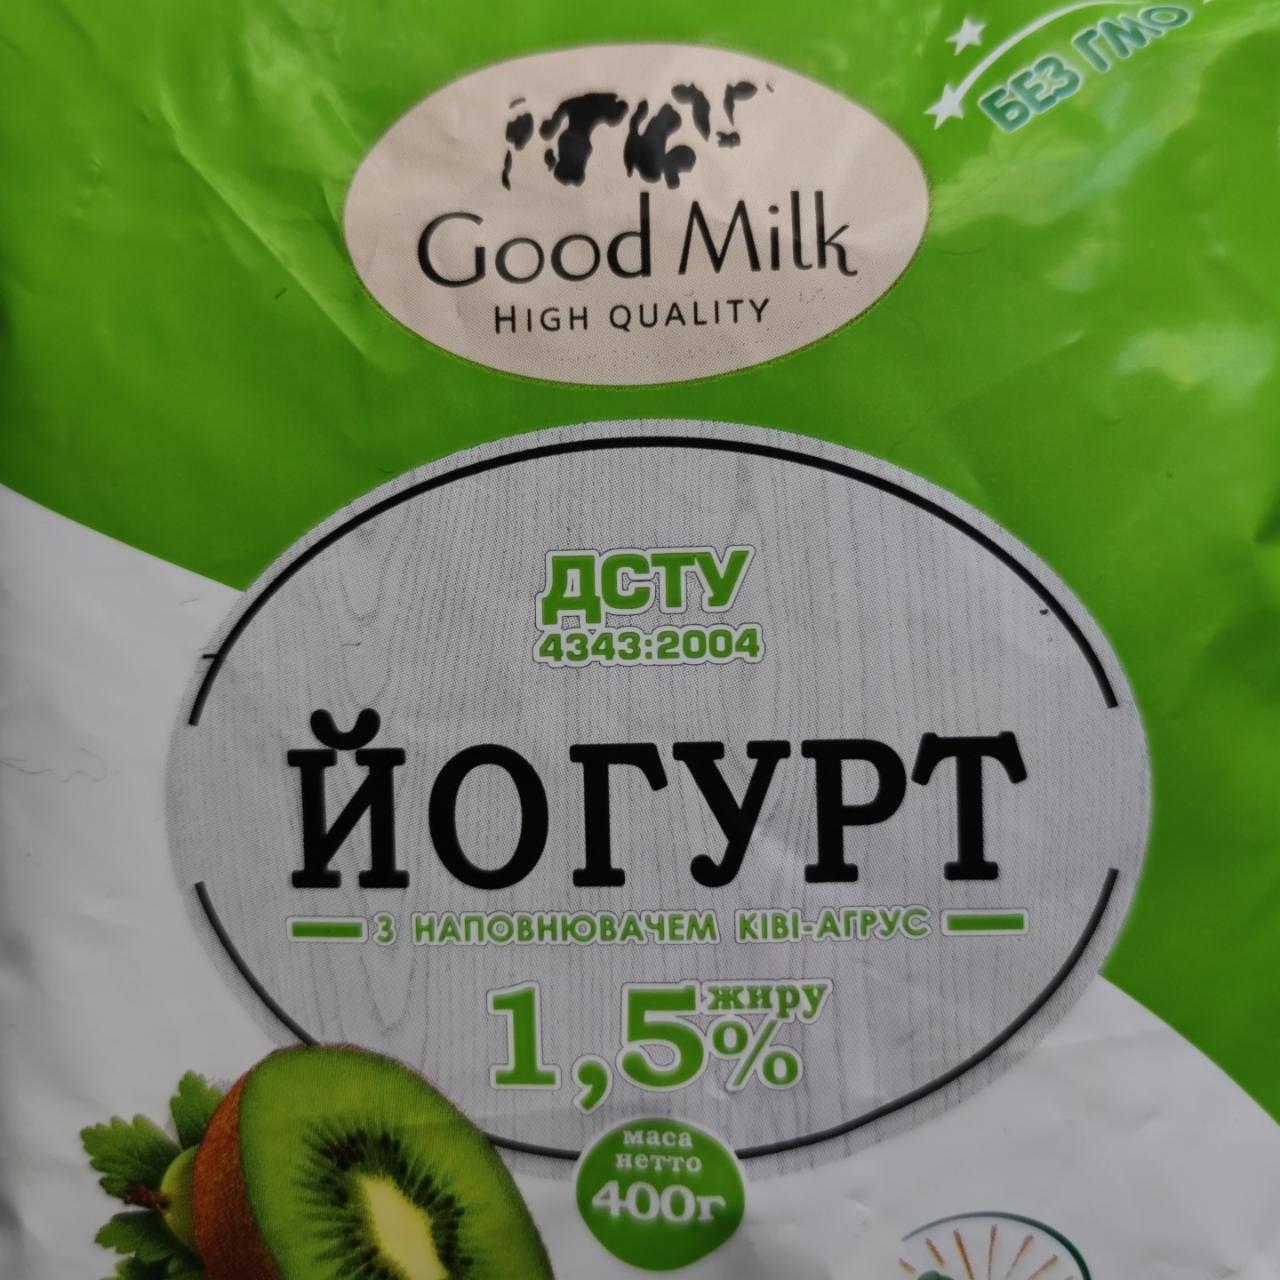 Фото - Йогурт 1.5% с наполнителем киви-агрус Good Milk